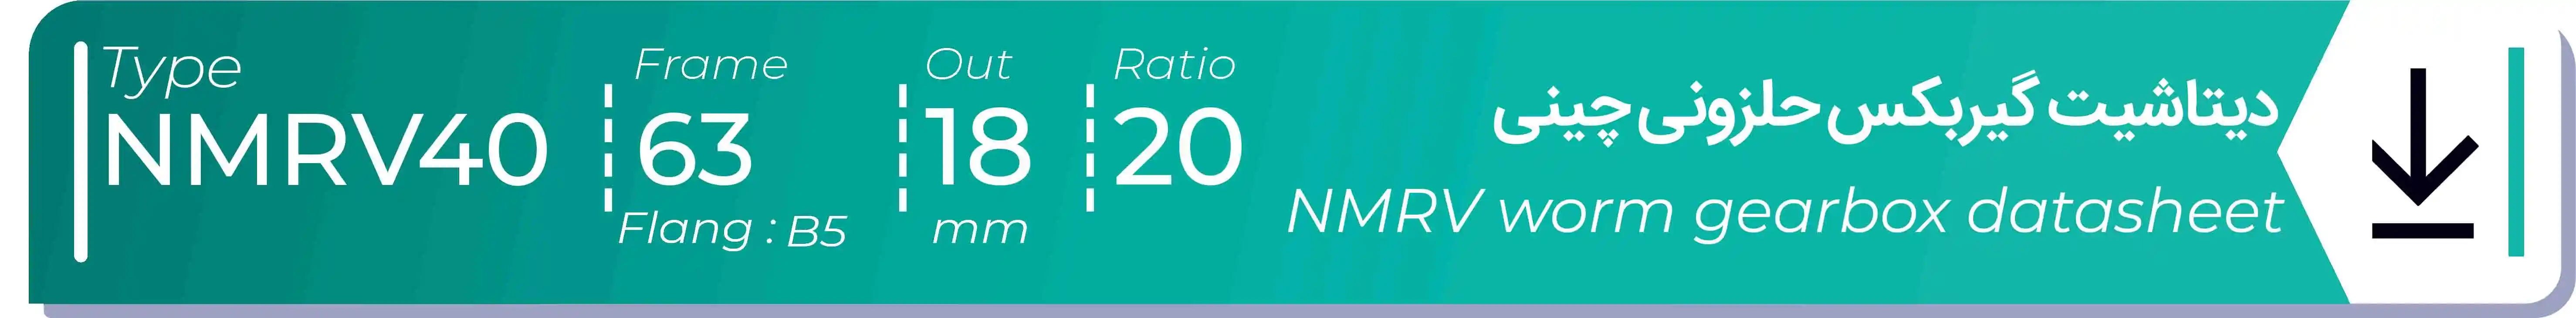  دیتاشیت و مشخصات فنی گیربکس حلزونی چینی   NMRV40  -  با خروجی 18- میلی متر و نسبت20 و فریم 63